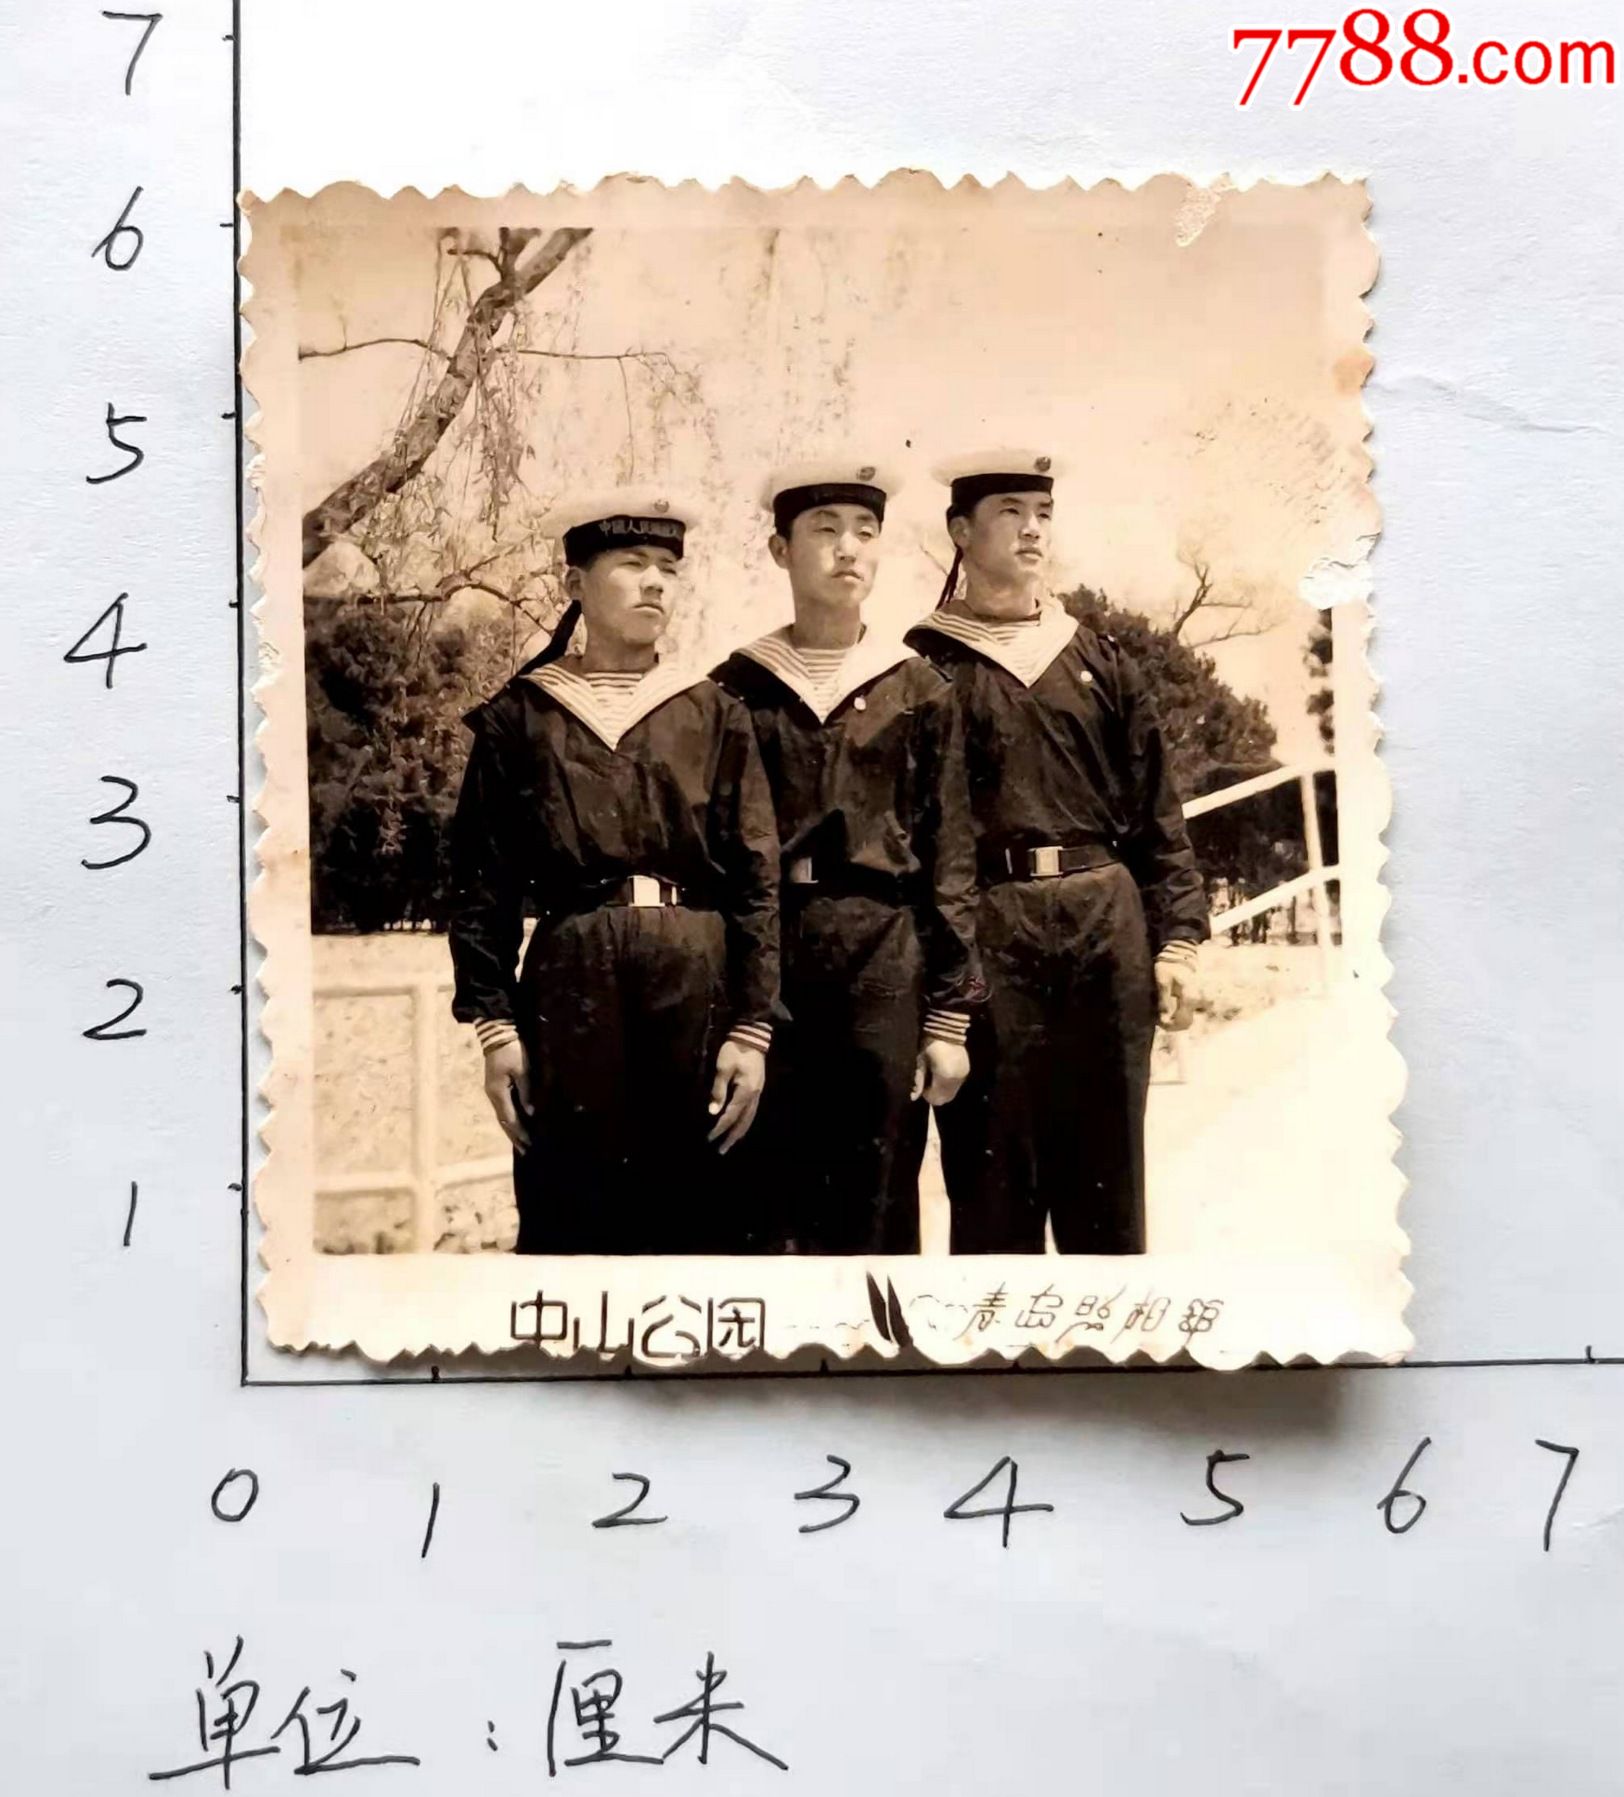 六十年代三名解放军海军战士在青岛中山公园合影黑白照片青岛照相馆